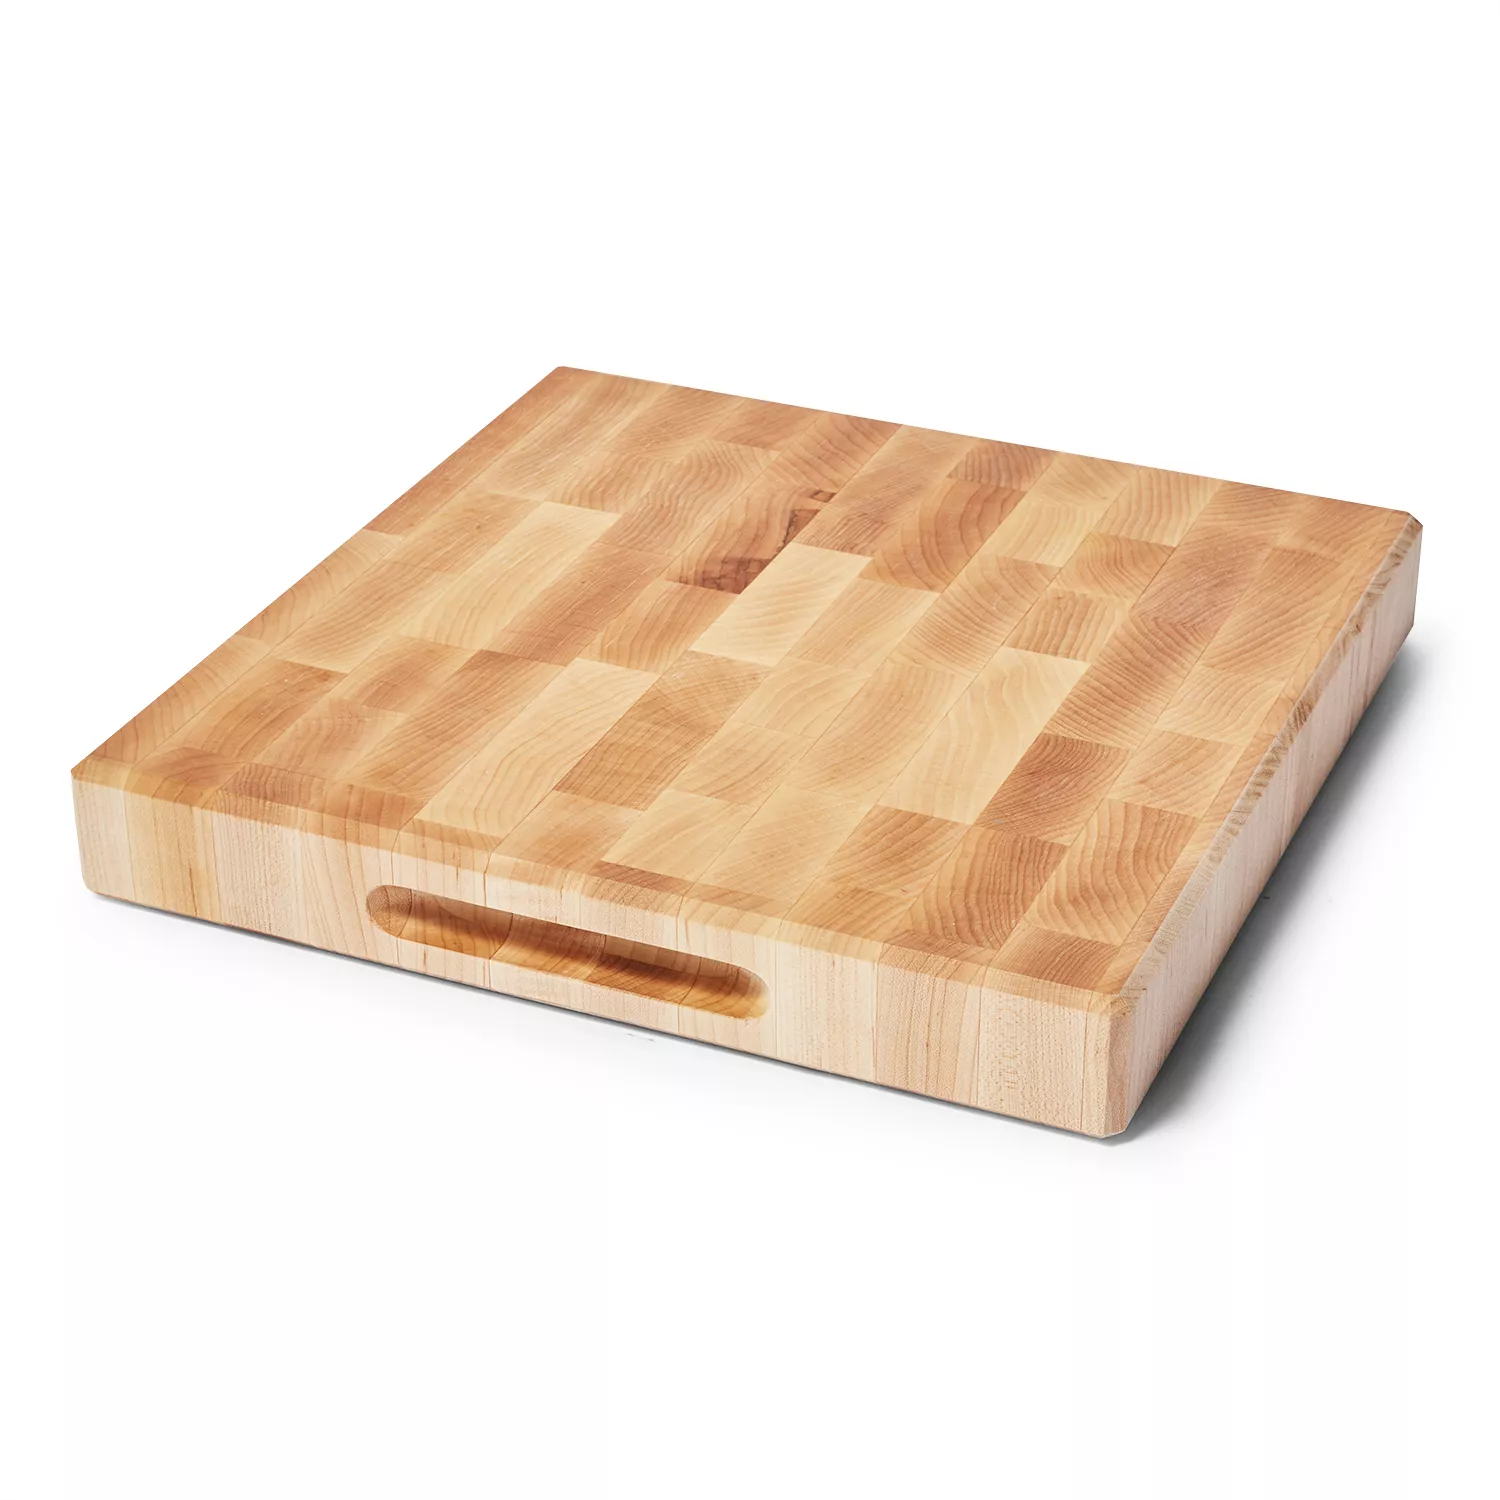 KitchenAid 11-in L x 14-in W Wood Cutting Board at